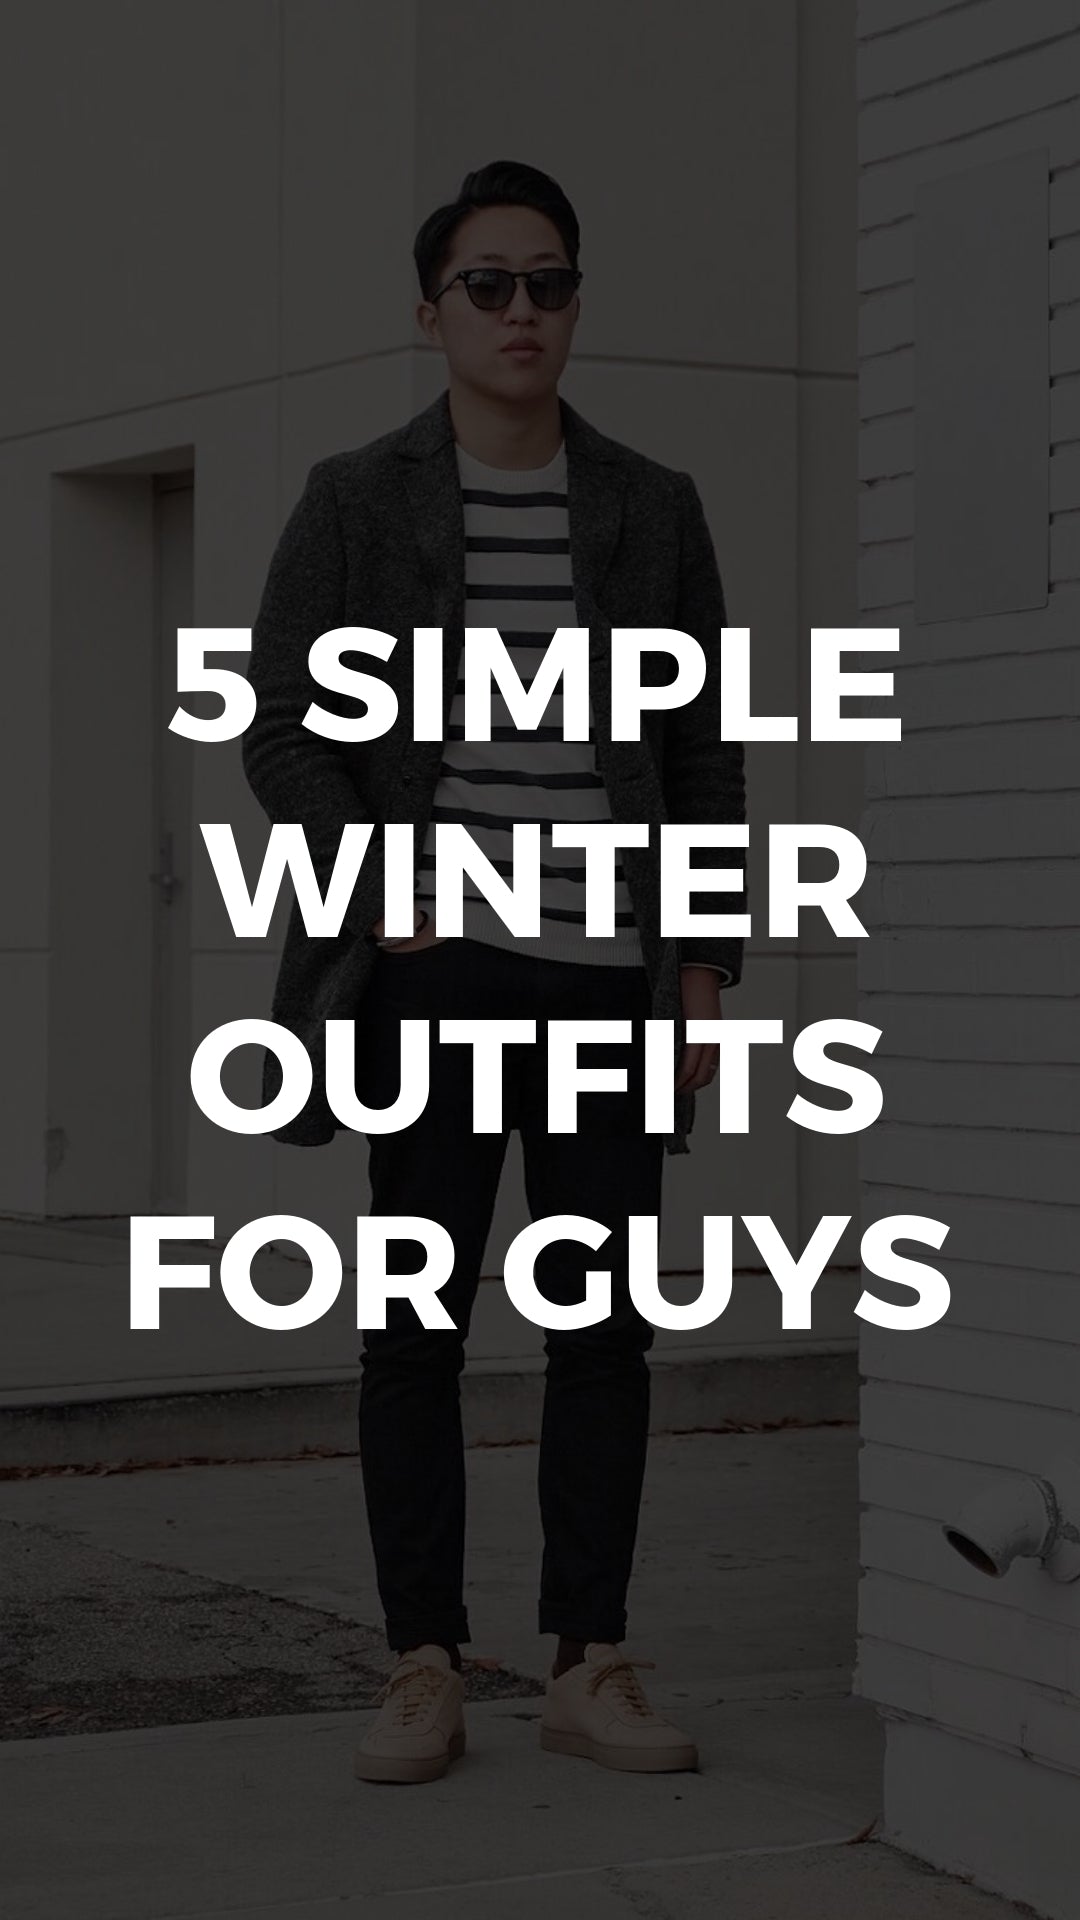 5 Minimal Winter Outfits For Men. #minimal #streetstyle #winterstyle #fallfashion #mensfashion 